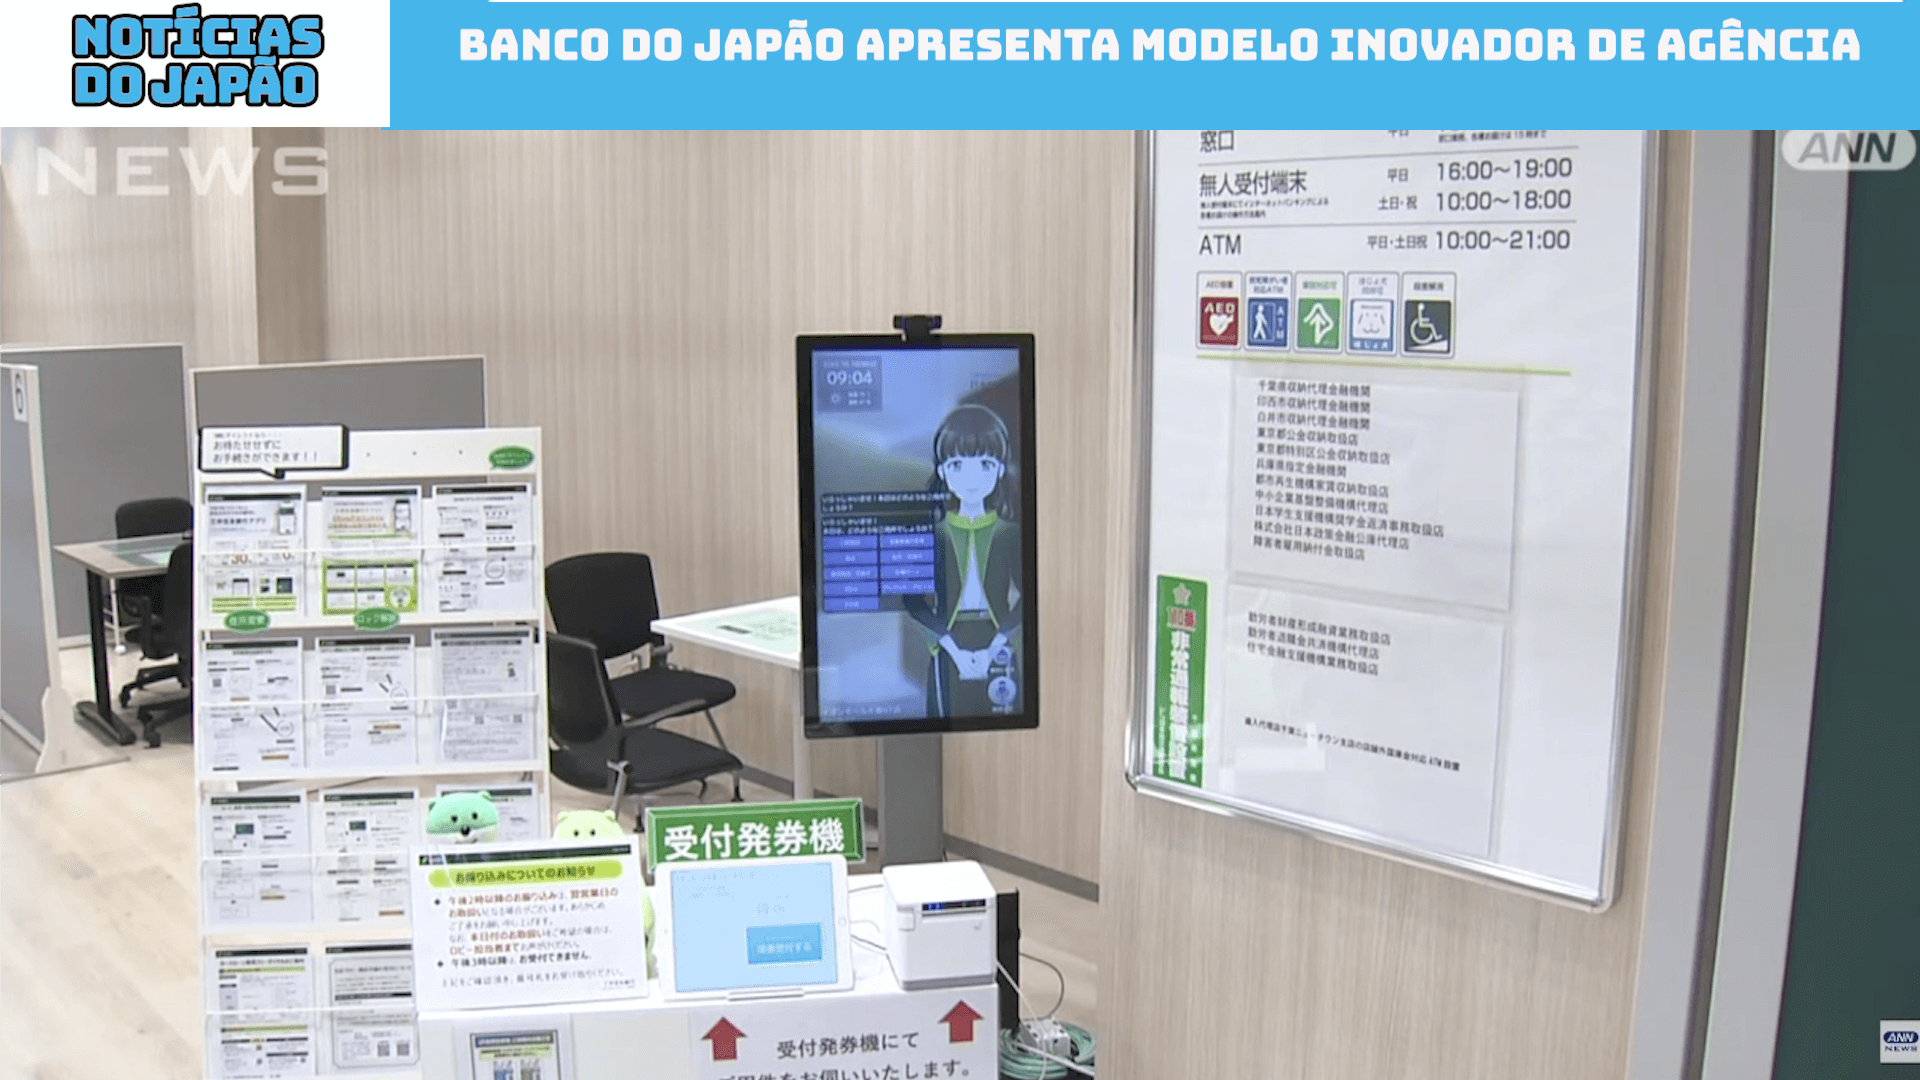 Banco do Japão apresenta modelo inovador de agência 